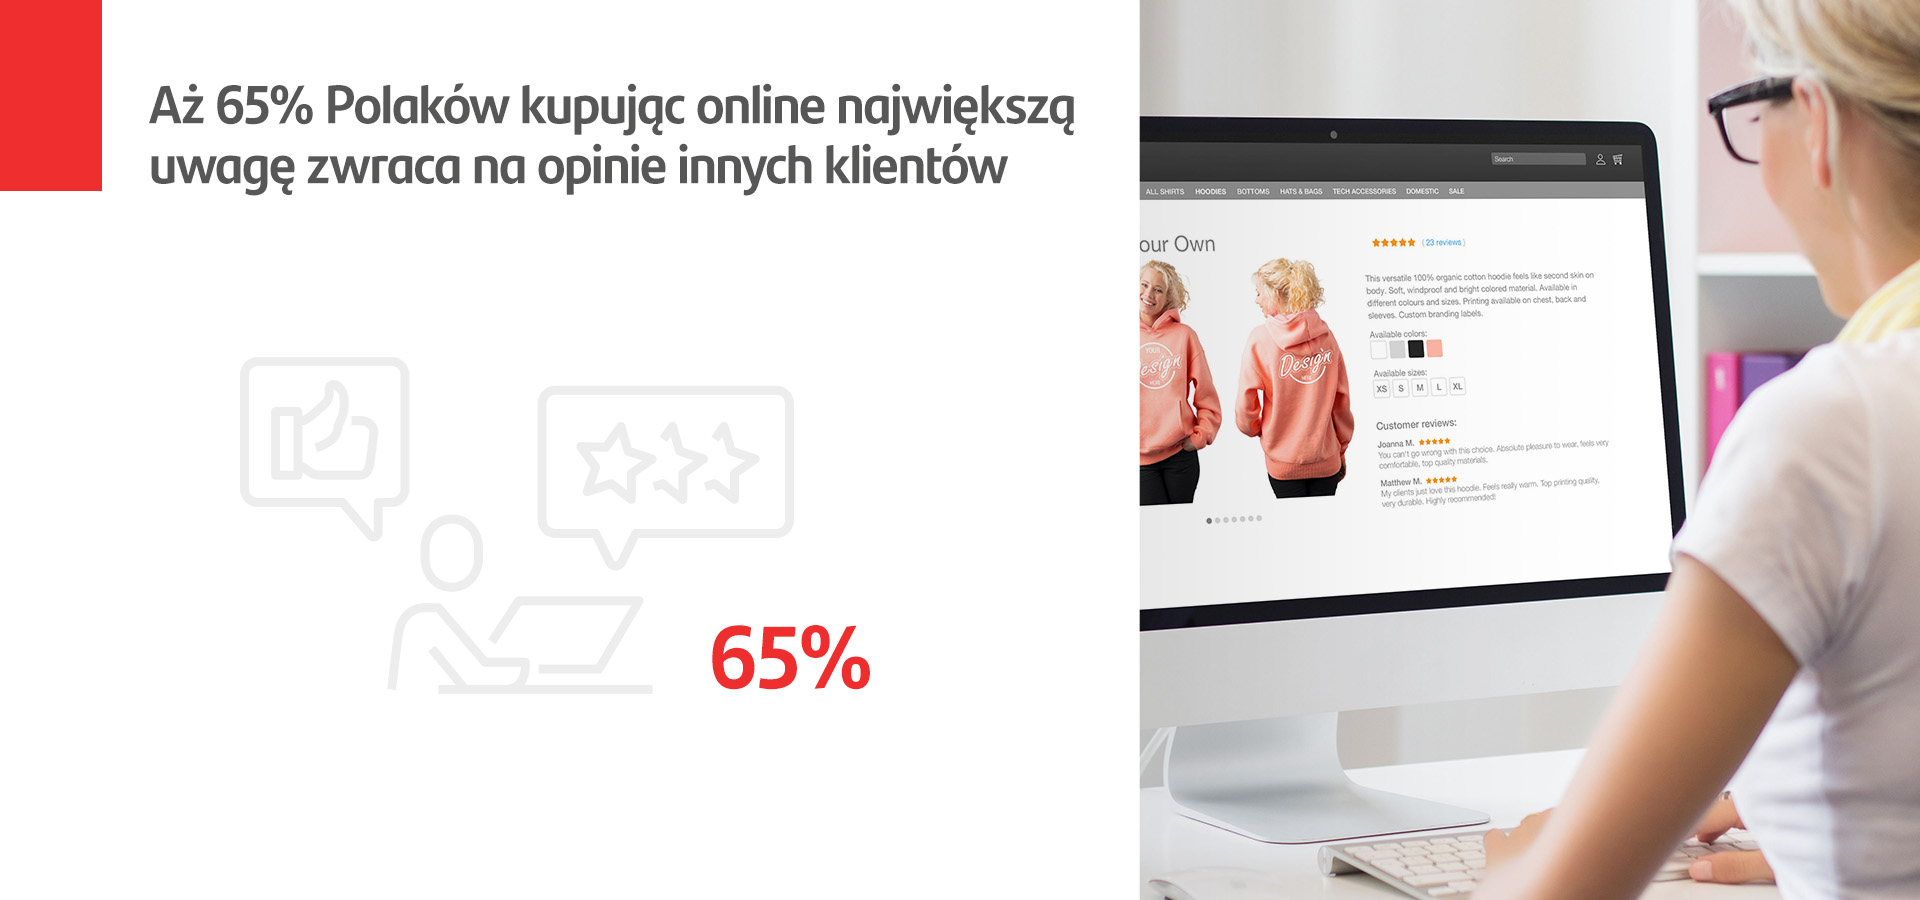 65 proc. Polaków kupując online zwraca największą uwagę na opinie innych użytkowników